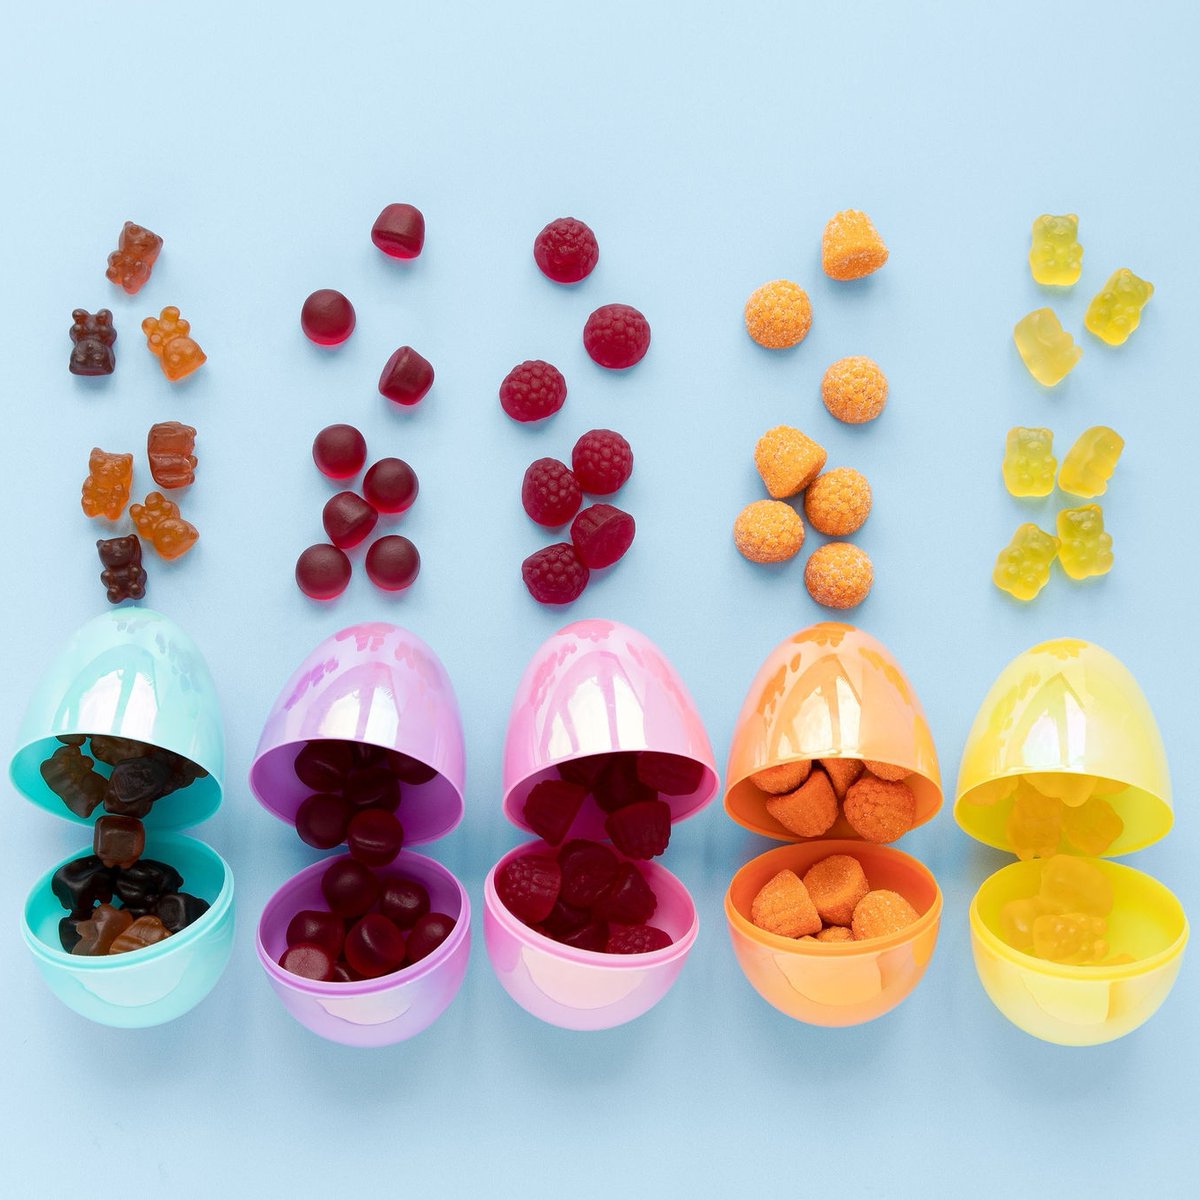 Gummy Vitamins you deserve!
🐣🐣🐣

SHOP NOW
l8r.it/zU3s

#alfavitamins #dailyvitamins #immunesupport #antioxidant #essentialminerals #herbalsupplements #wellness #nutrition #supplementsthatwork #gummies #easter #treats #nogelatin #gummyvitamins #softchew #natural